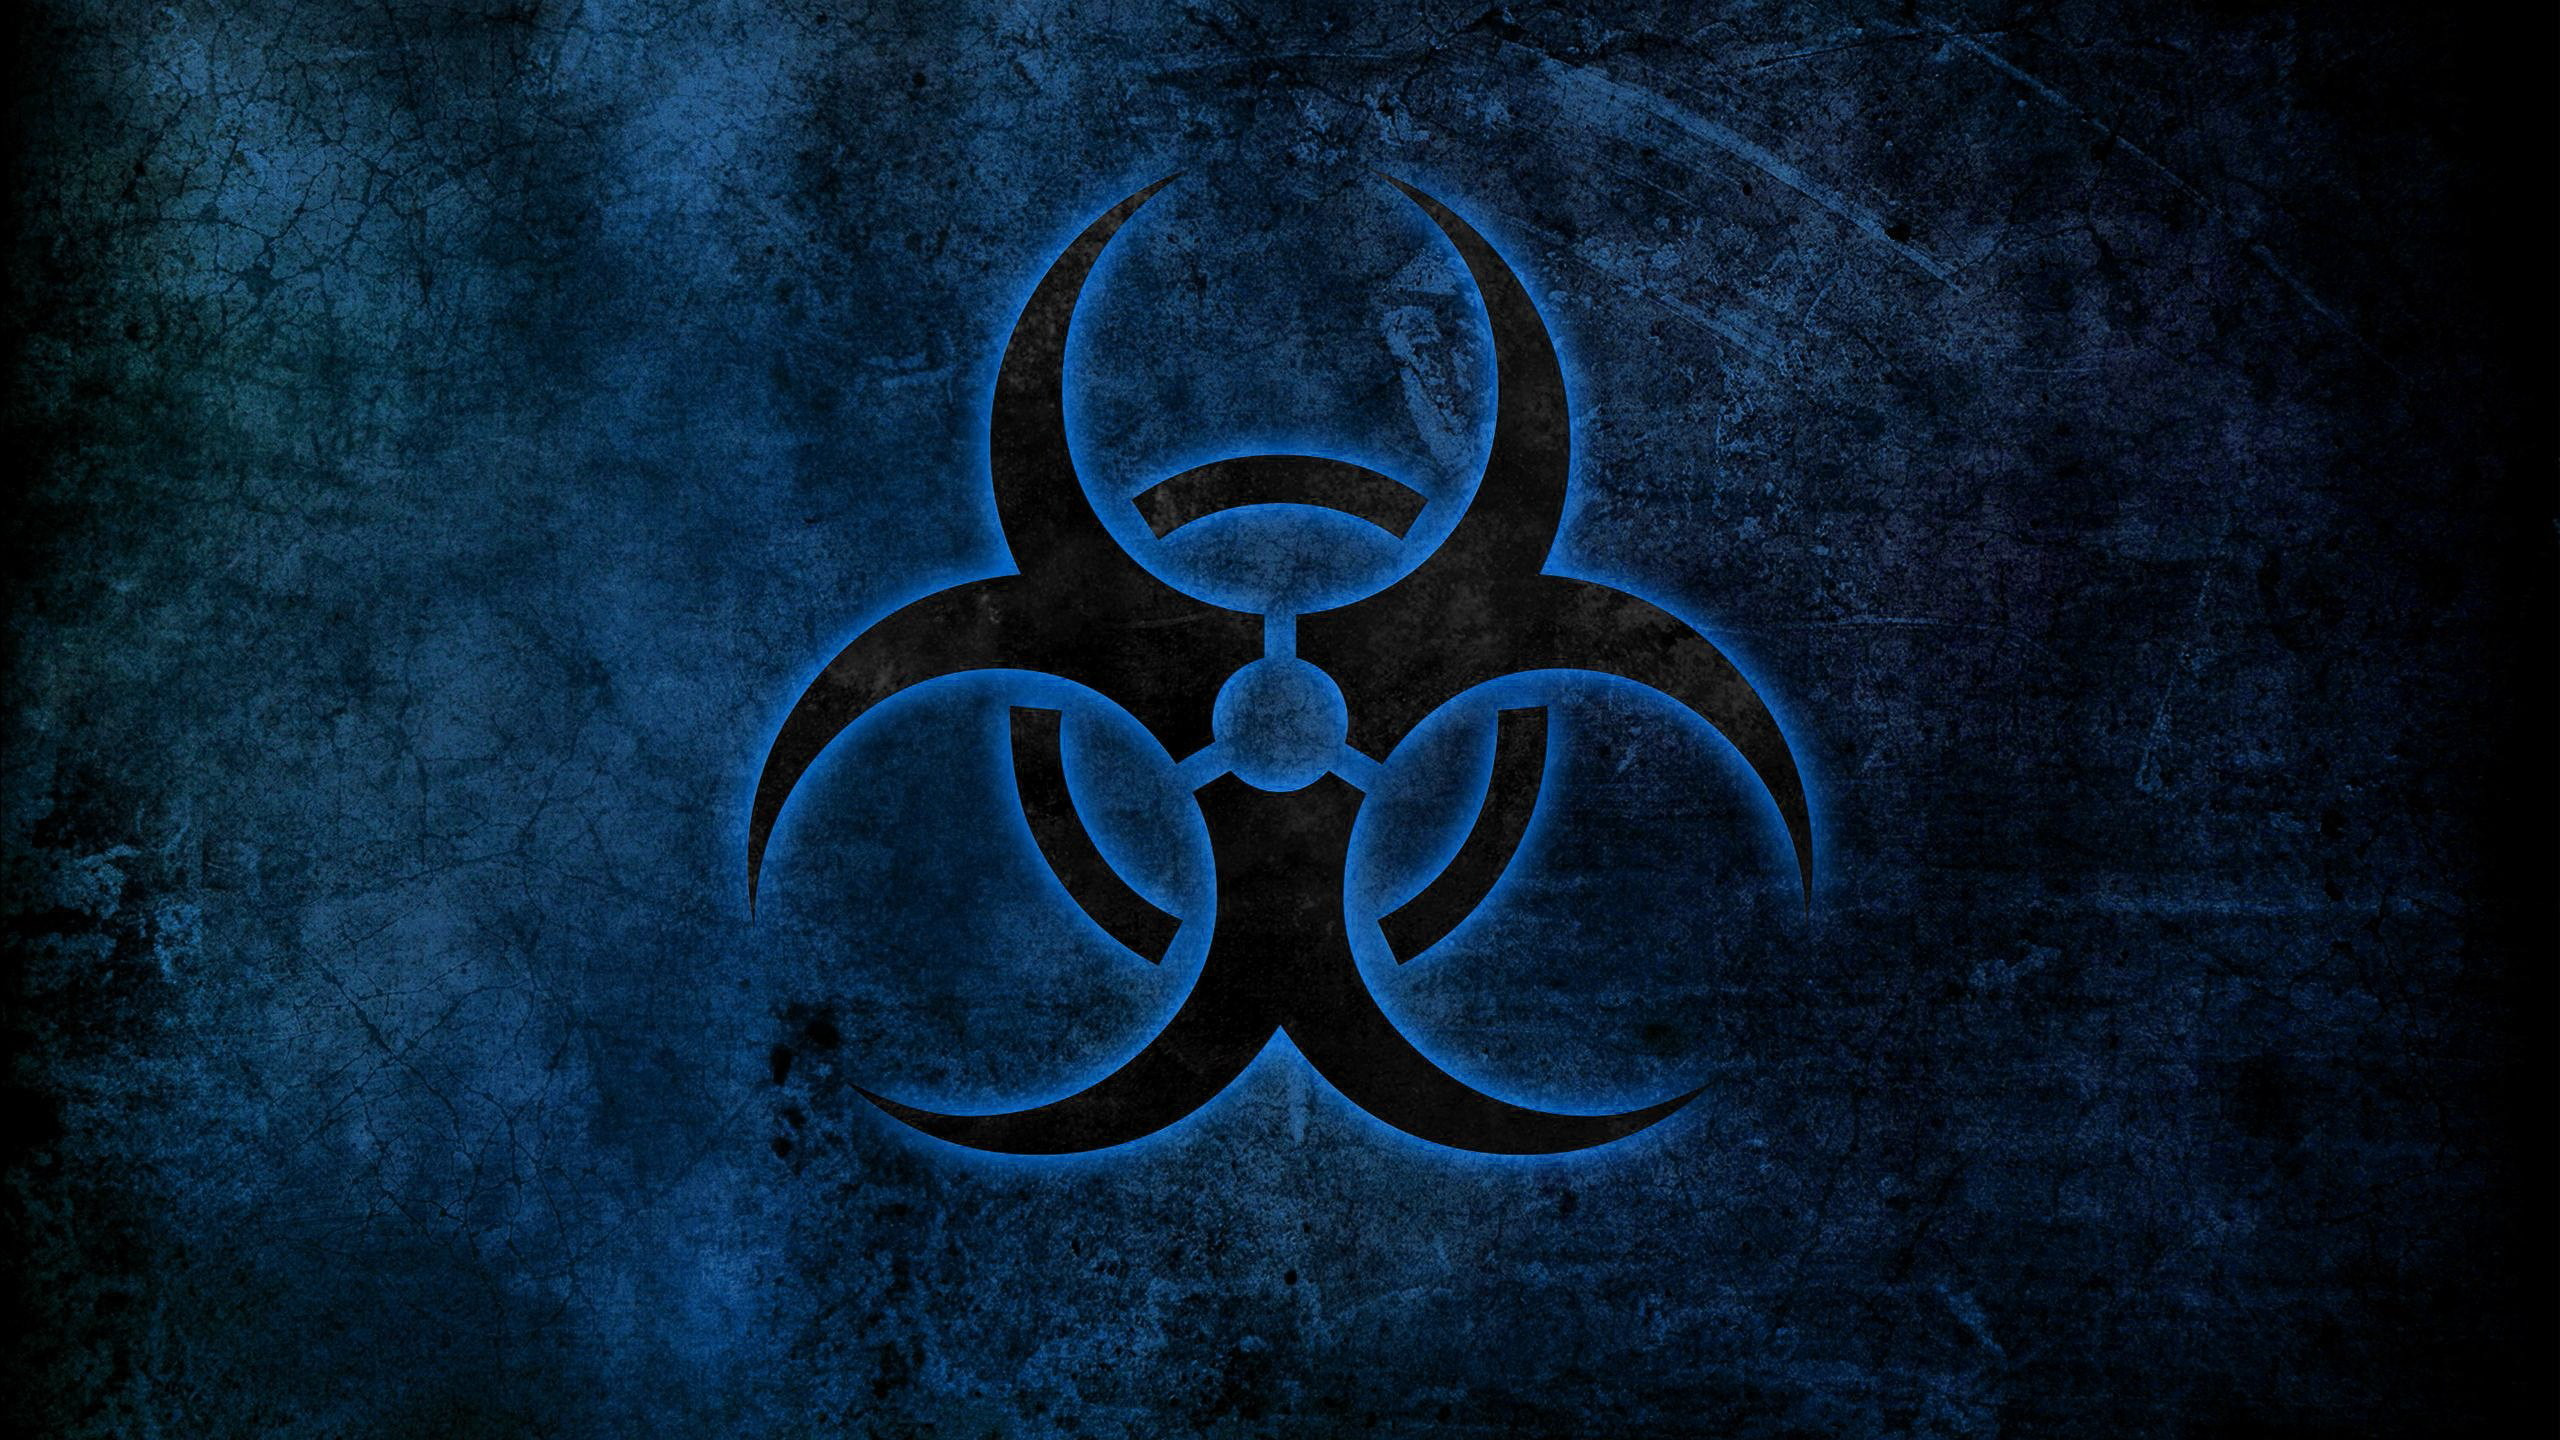 biohazard_symbol_2560x1440.jpg